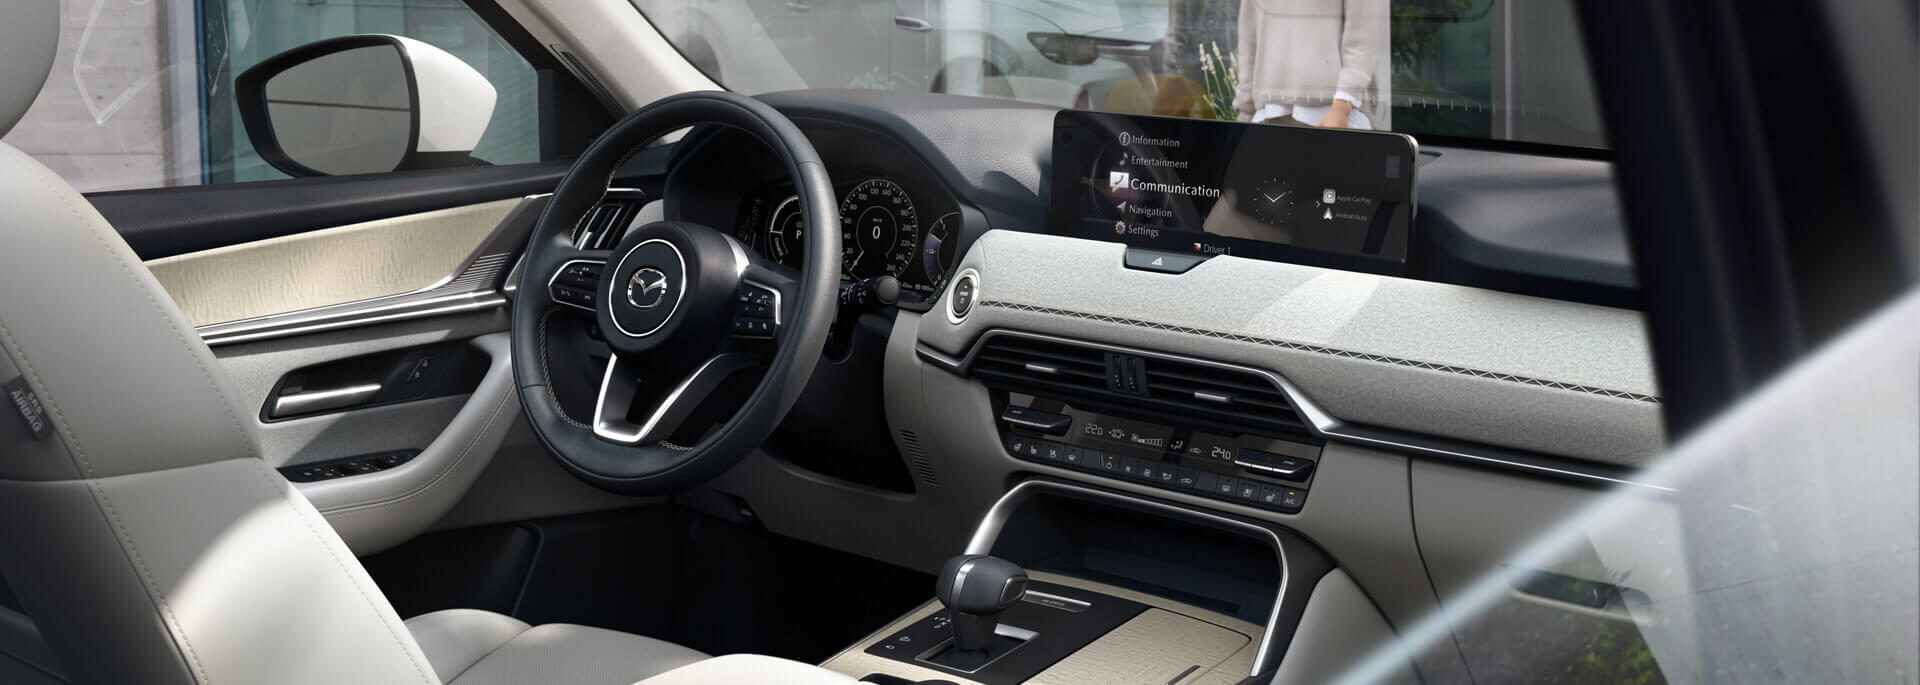 Gli interni spaziosi del nuovo SUV Mazda CX-60 Plug-In Hybrid sono caratterizzati dall'artigianato giapponese.